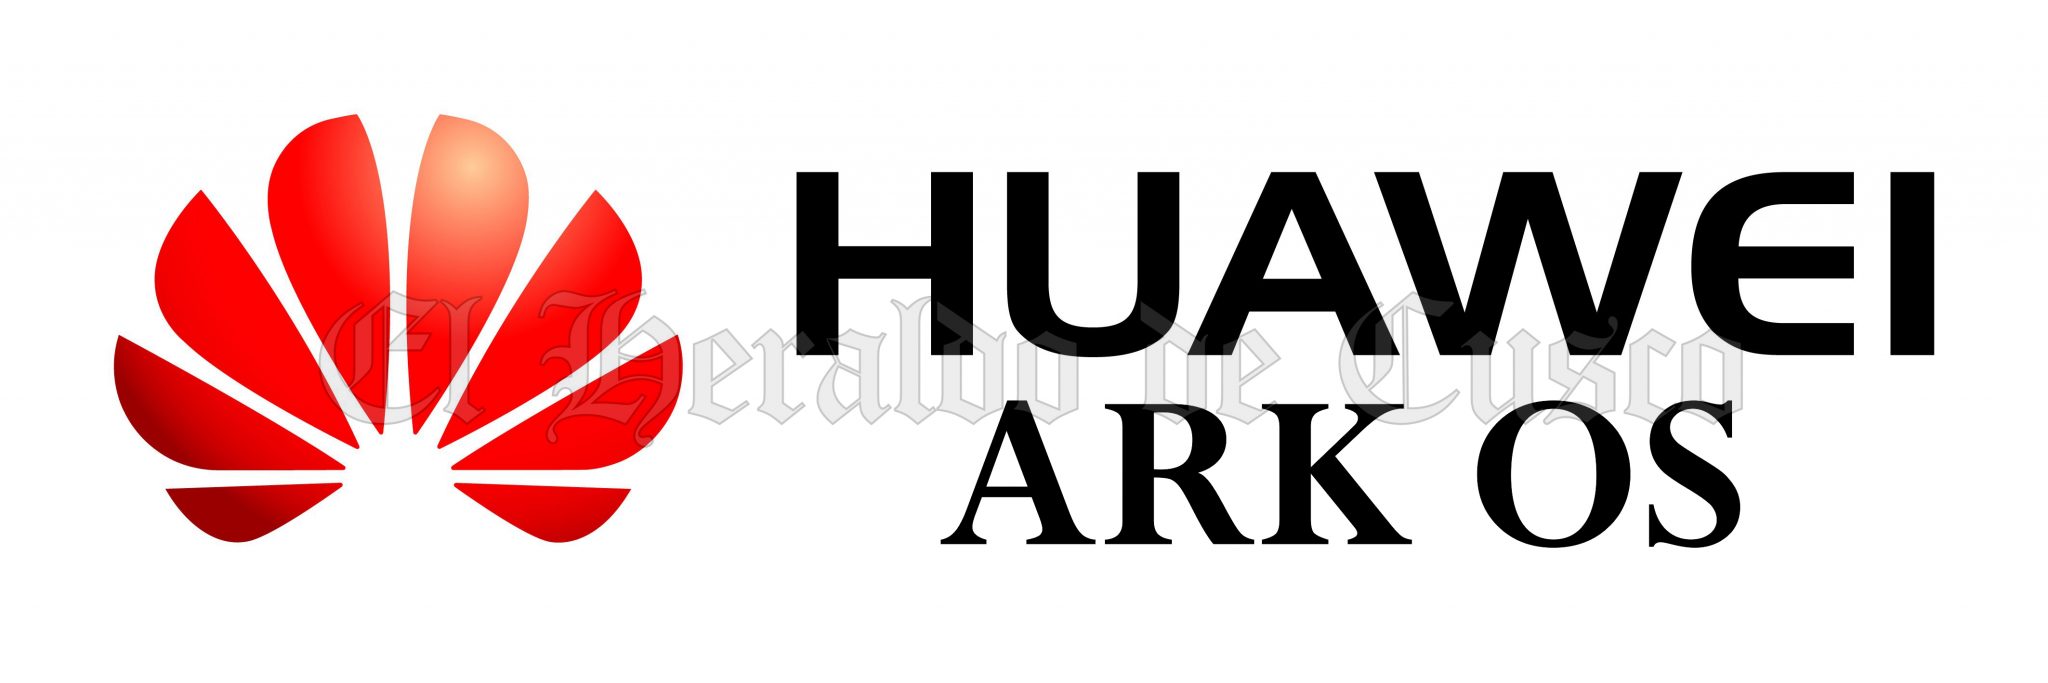 Huawei Ark Os logo Gaia Servicios